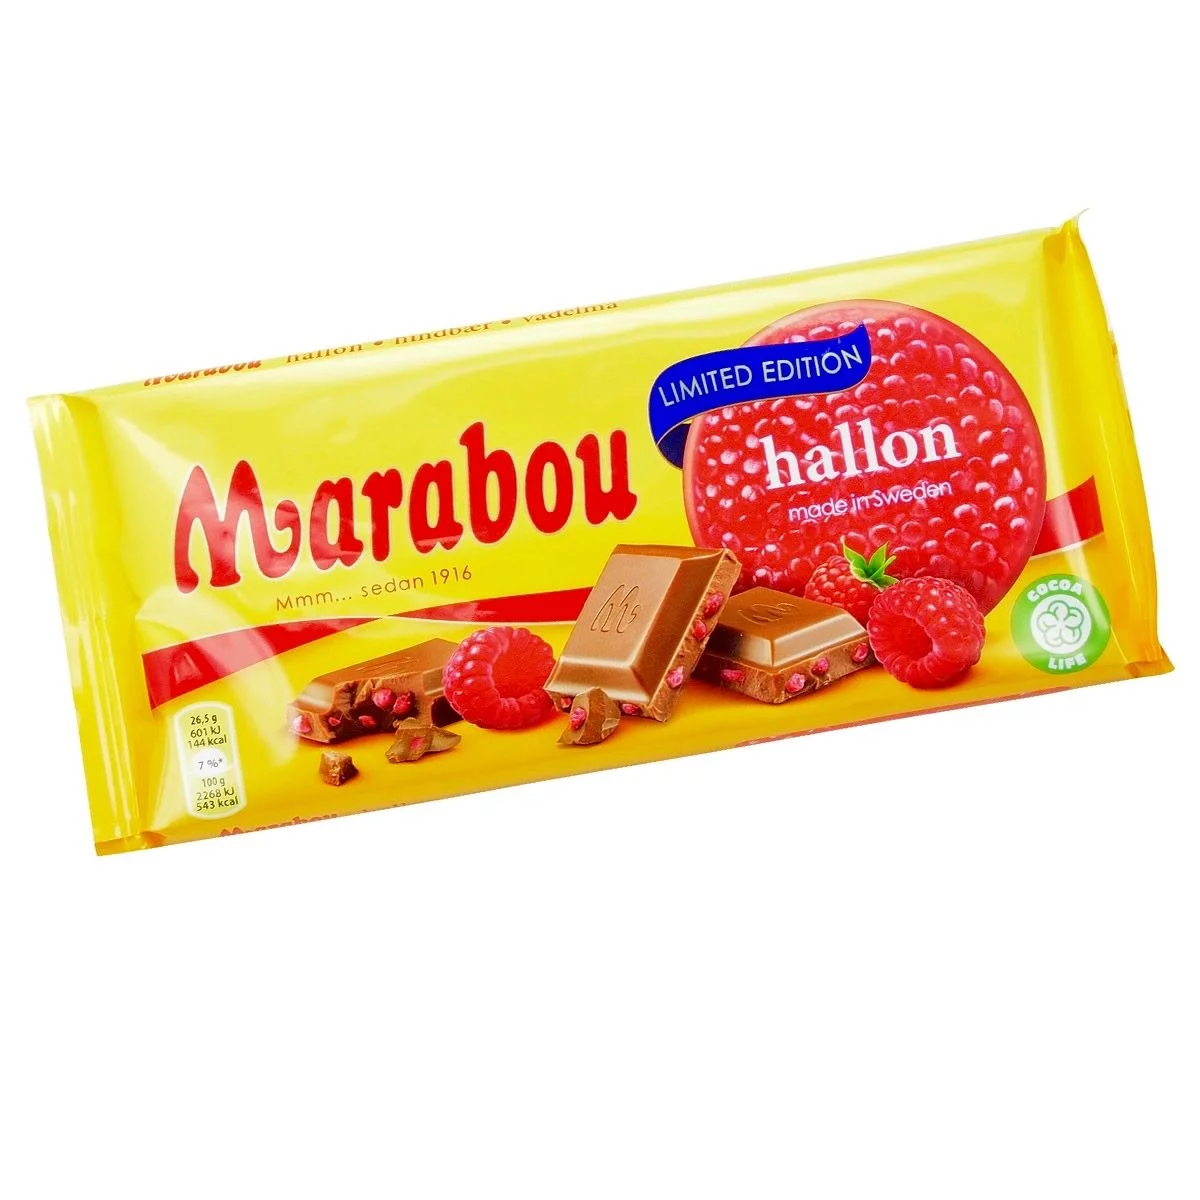 Marabou hallon (185g) 1